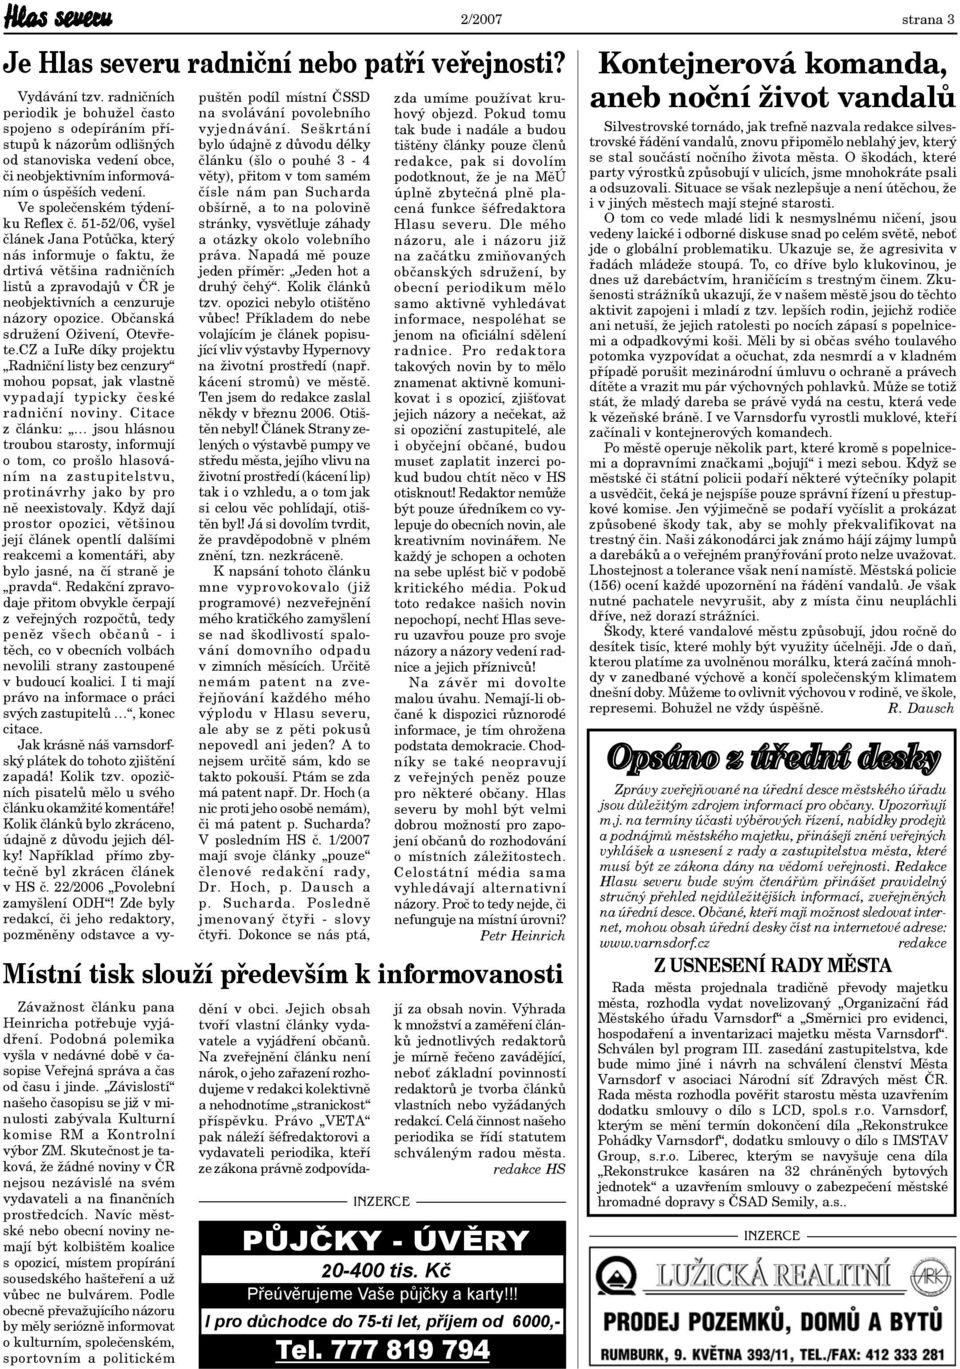 51-52/06, vyšel článek Jana Potůčka, který nás informuje o faktu, že drtivá většina radničních listů a zpravodajů v ČR je neobjektivních a cenzuruje názory opozice.